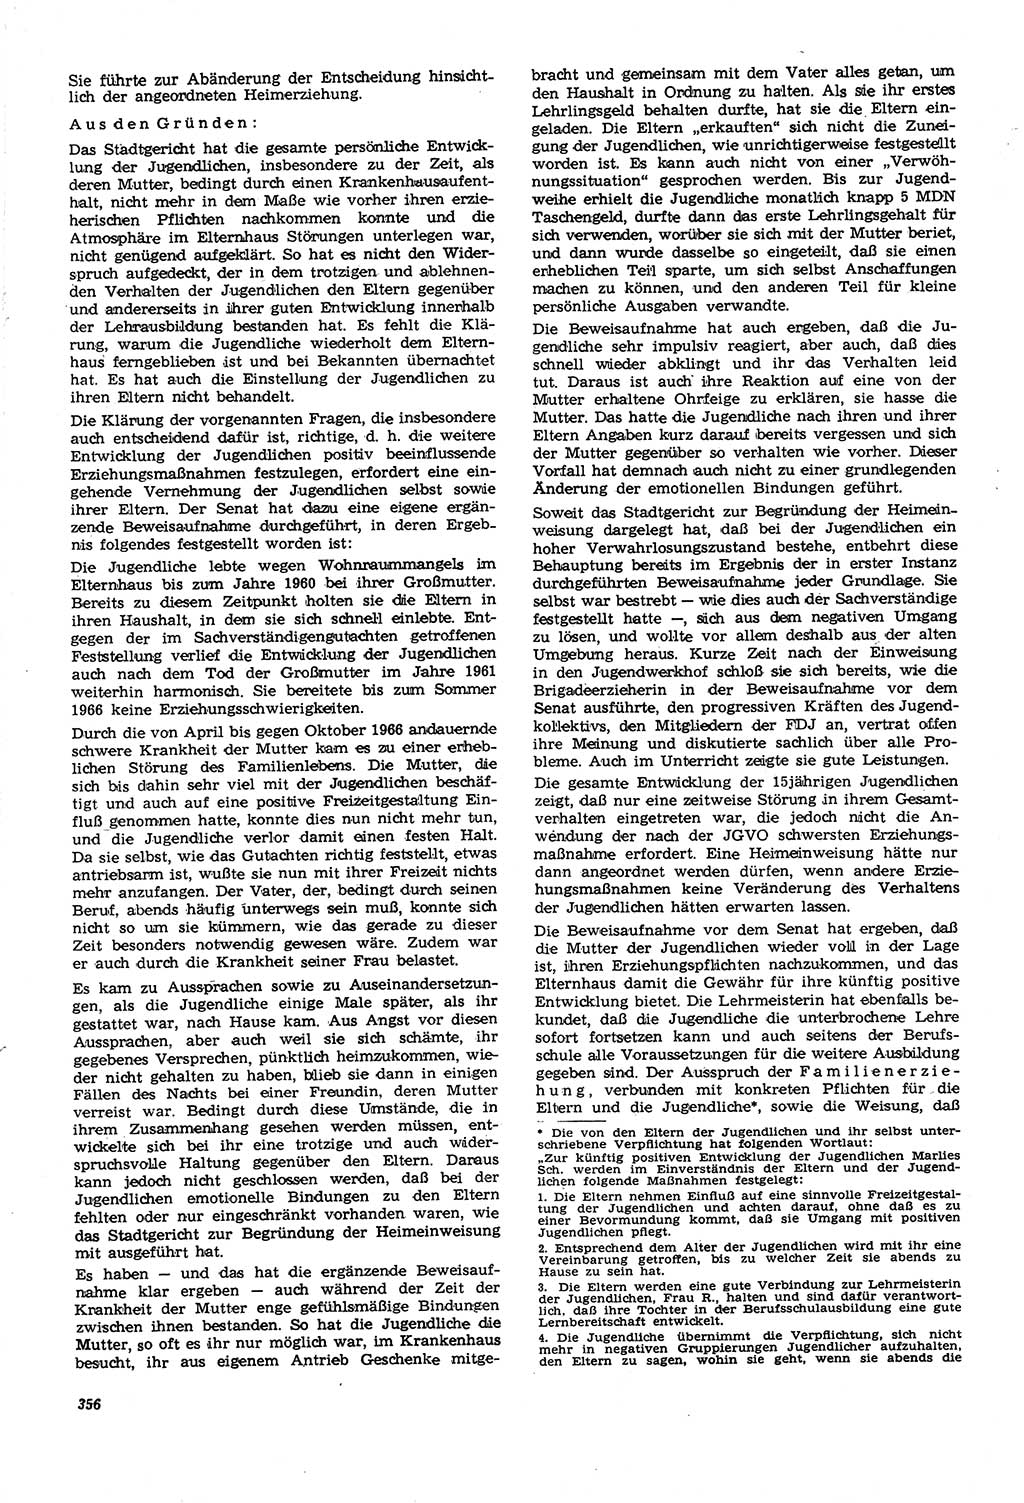 Neue Justiz (NJ), Zeitschrift für Recht und Rechtswissenschaft [Deutsche Demokratische Republik (DDR)], 21. Jahrgang 1967, Seite 356 (NJ DDR 1967, S. 356)